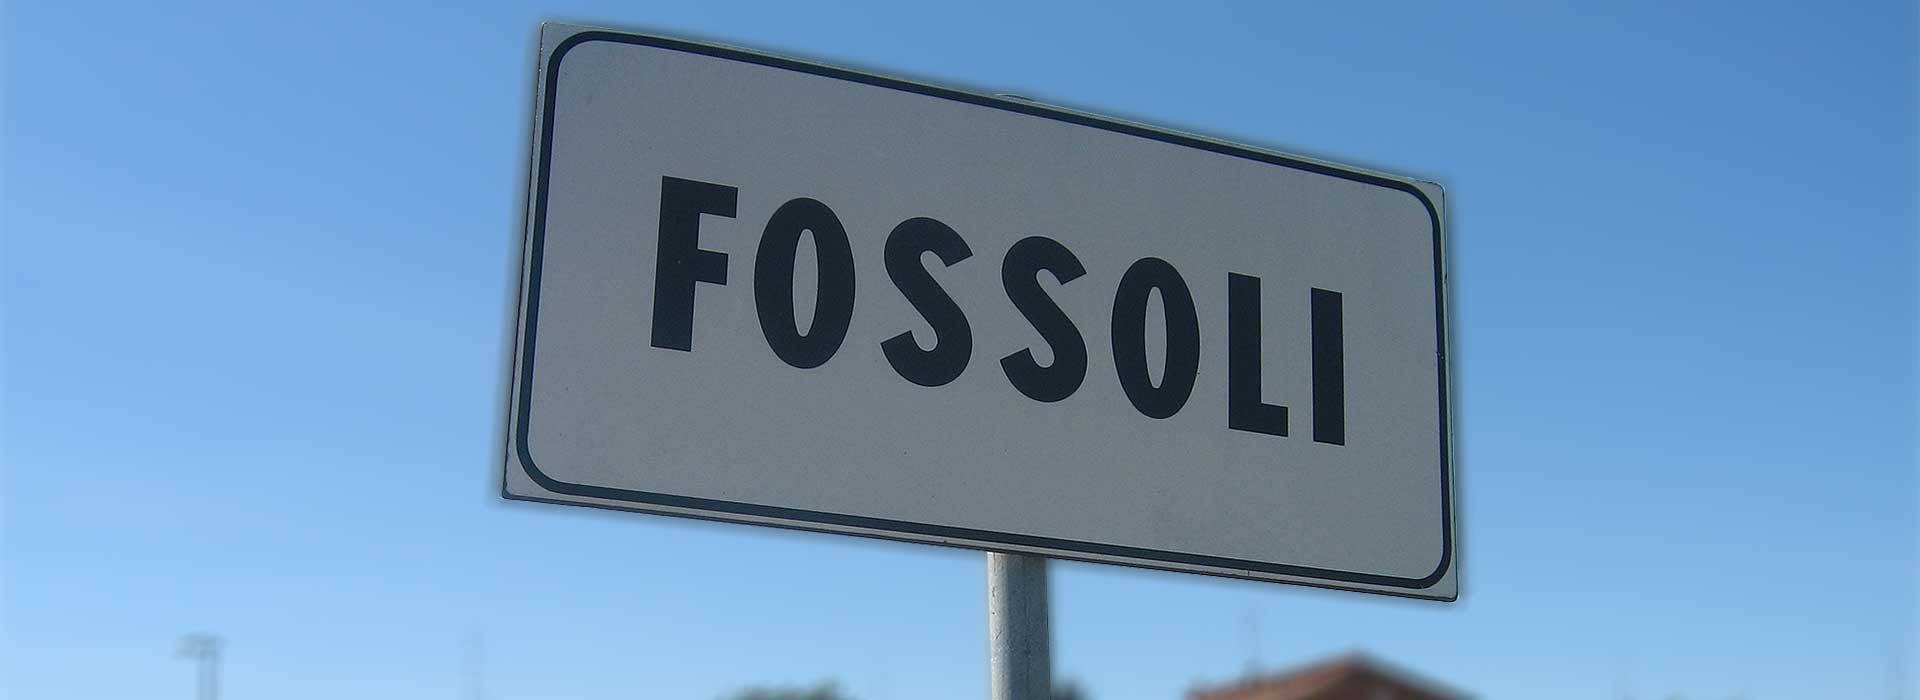 Fossoli - Particolare